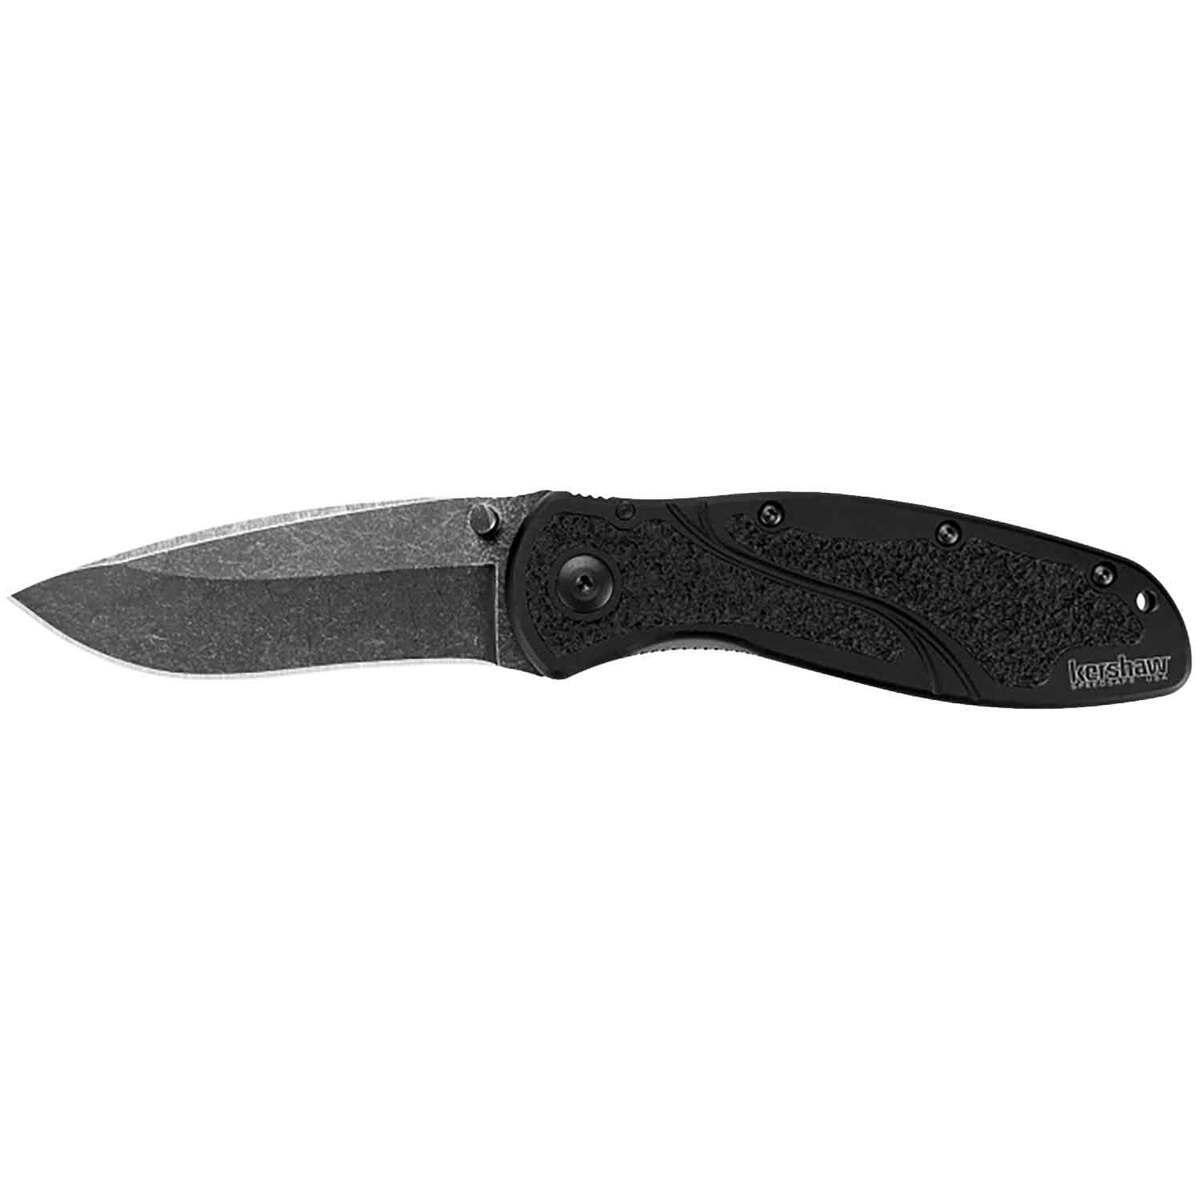 Kershaw Blur 3.4 inch Folding Knife | Sportsman's Warehouse